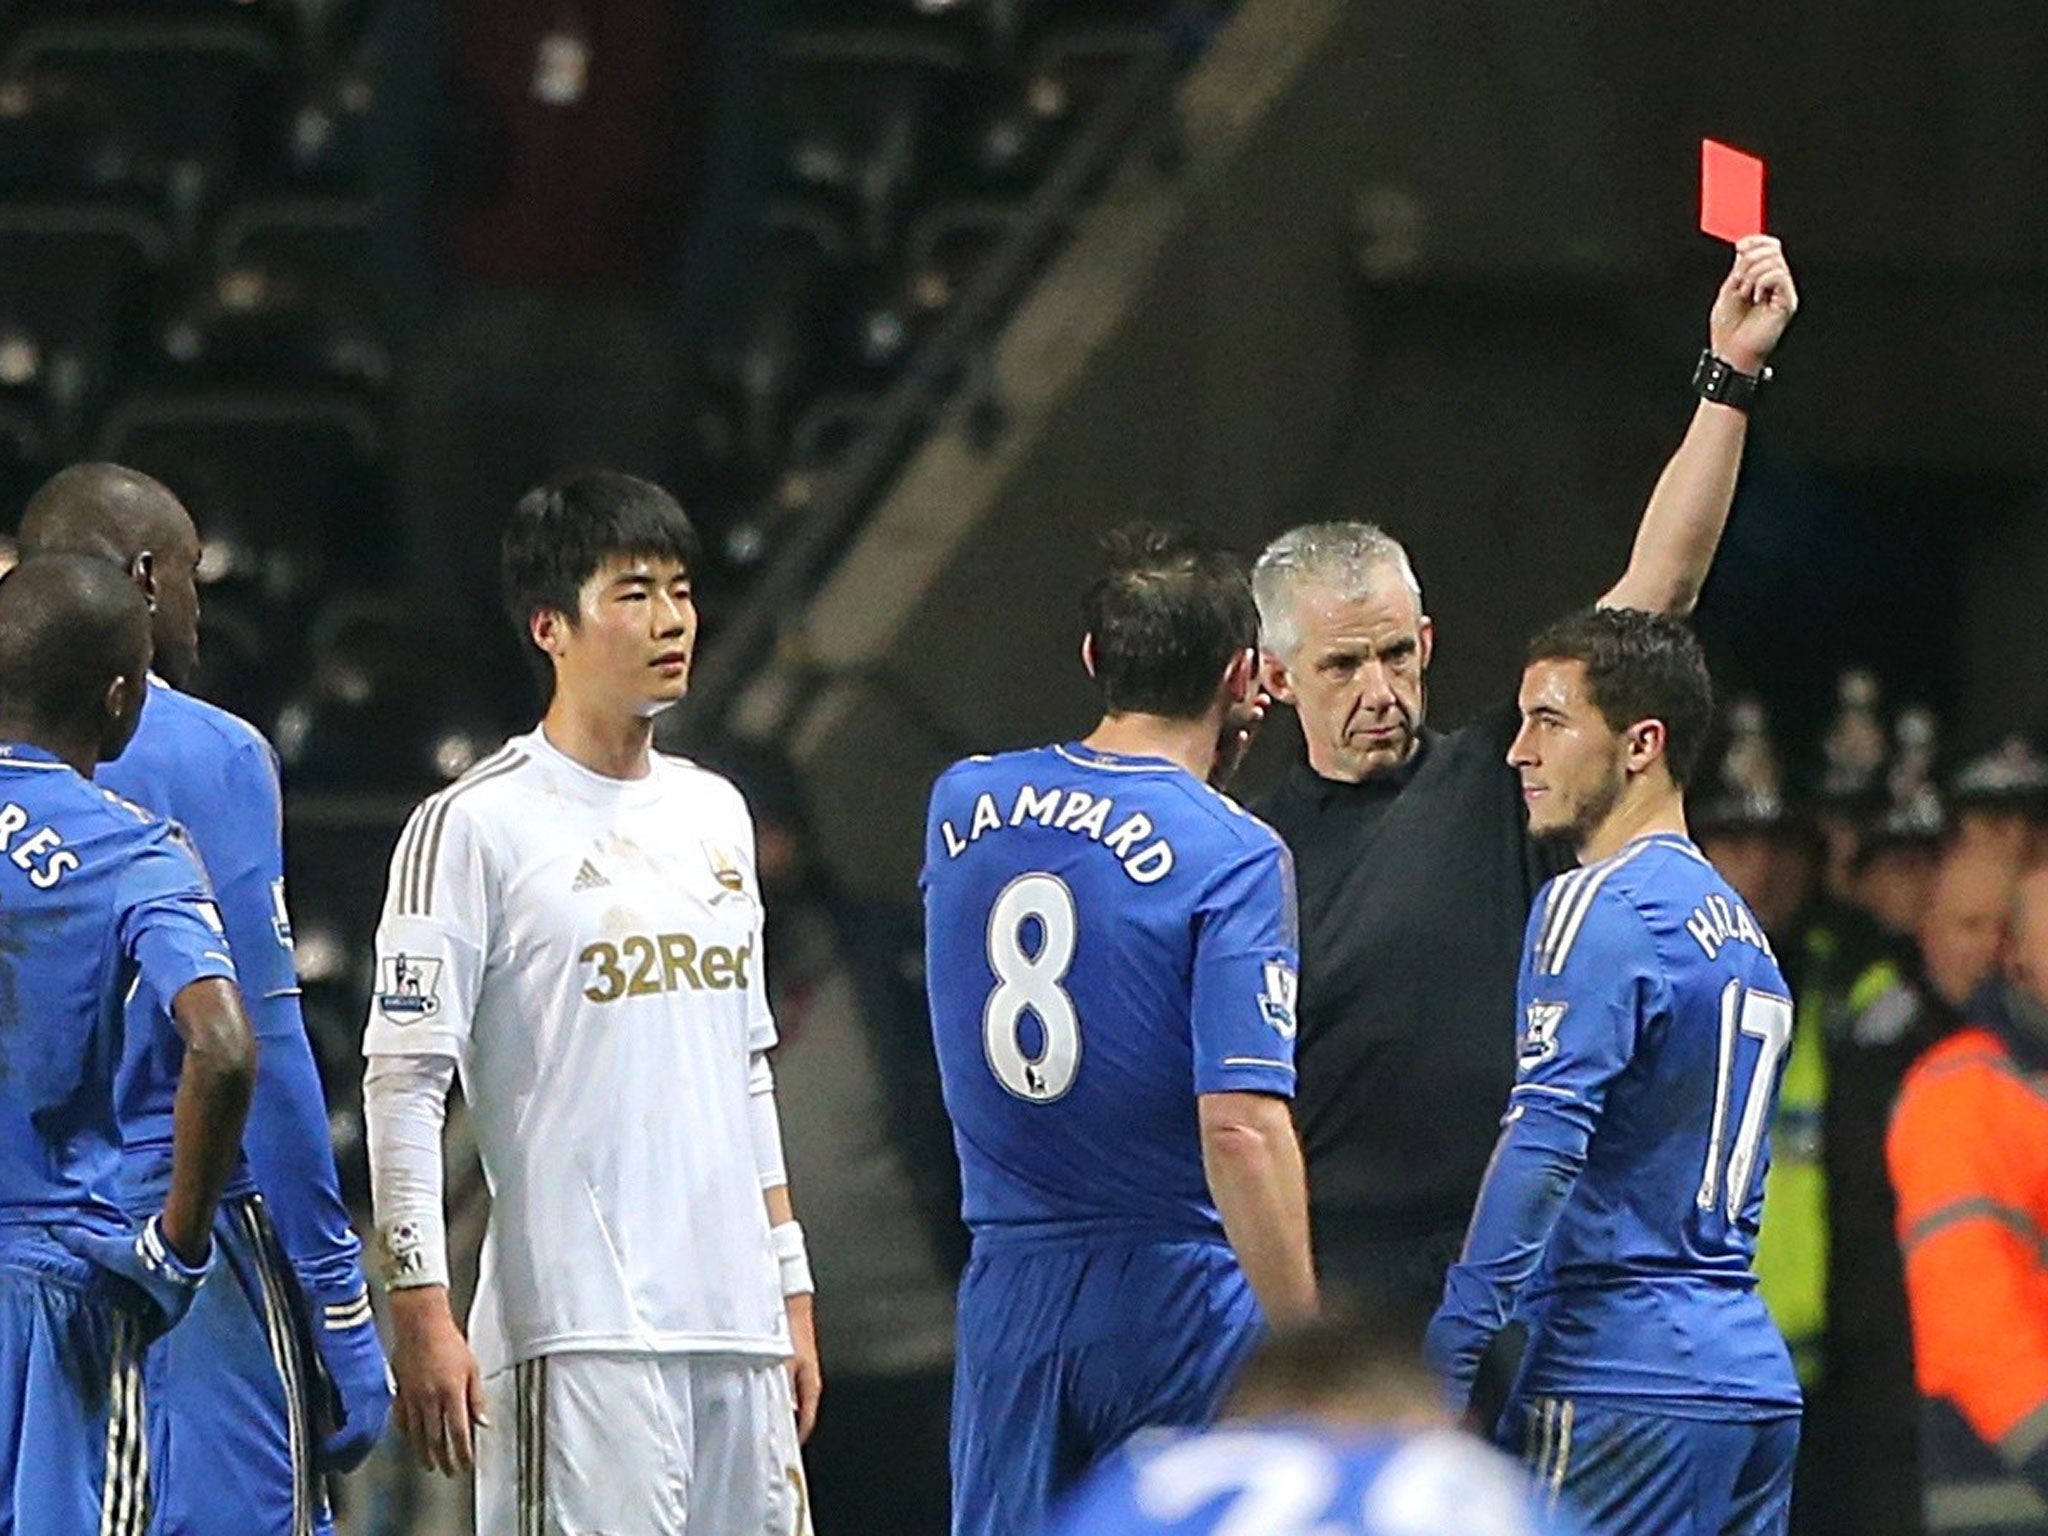 Eden Hazard was sent off after clashing with a Swansea ballboy